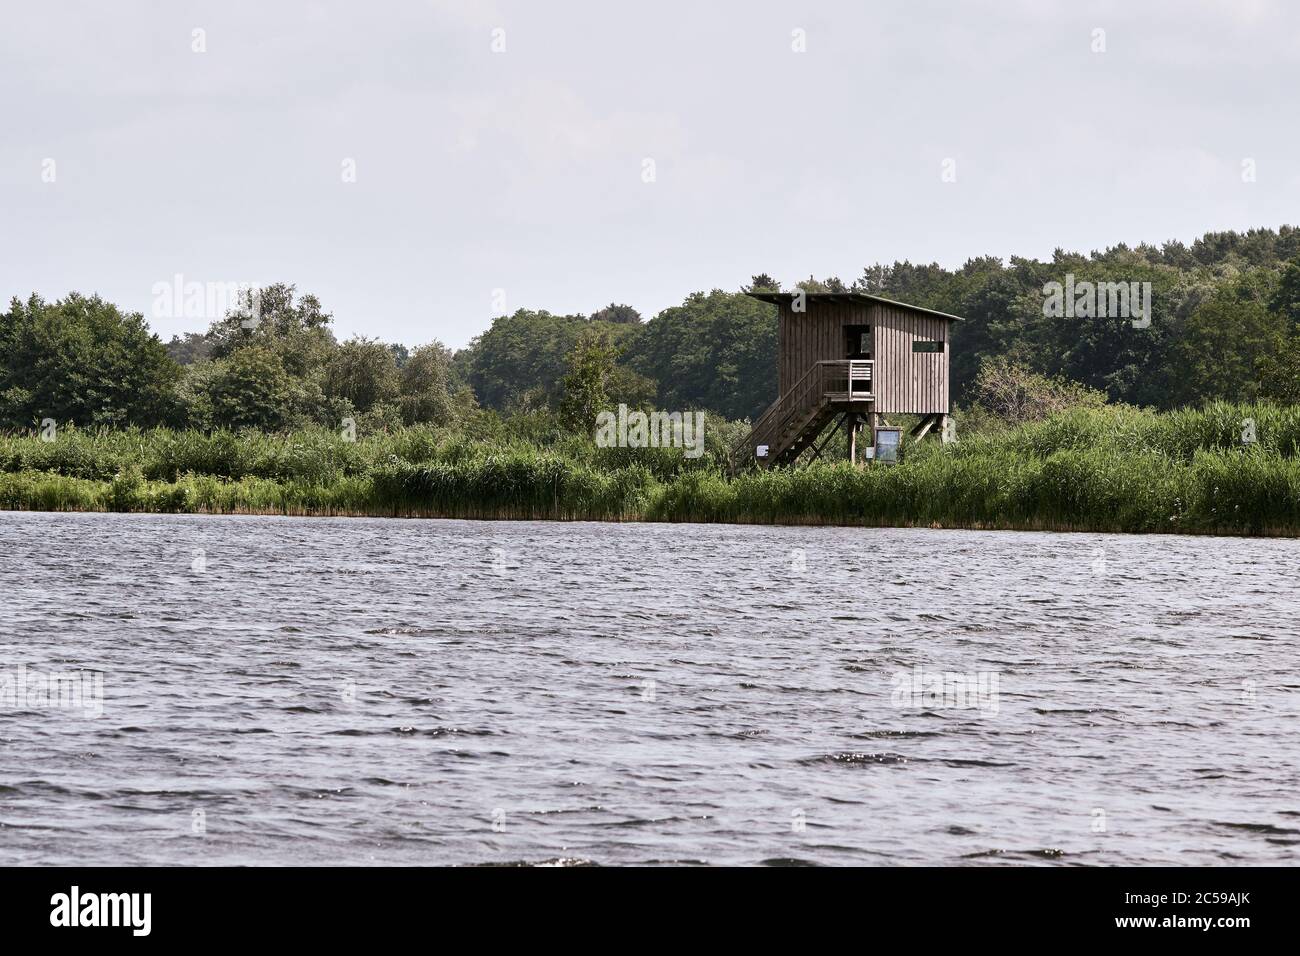 Paisaje ciego y verde en la reserva natural de Meißendorf Lakes y Bannetze Moor en Winsen, Alemania Foto de stock